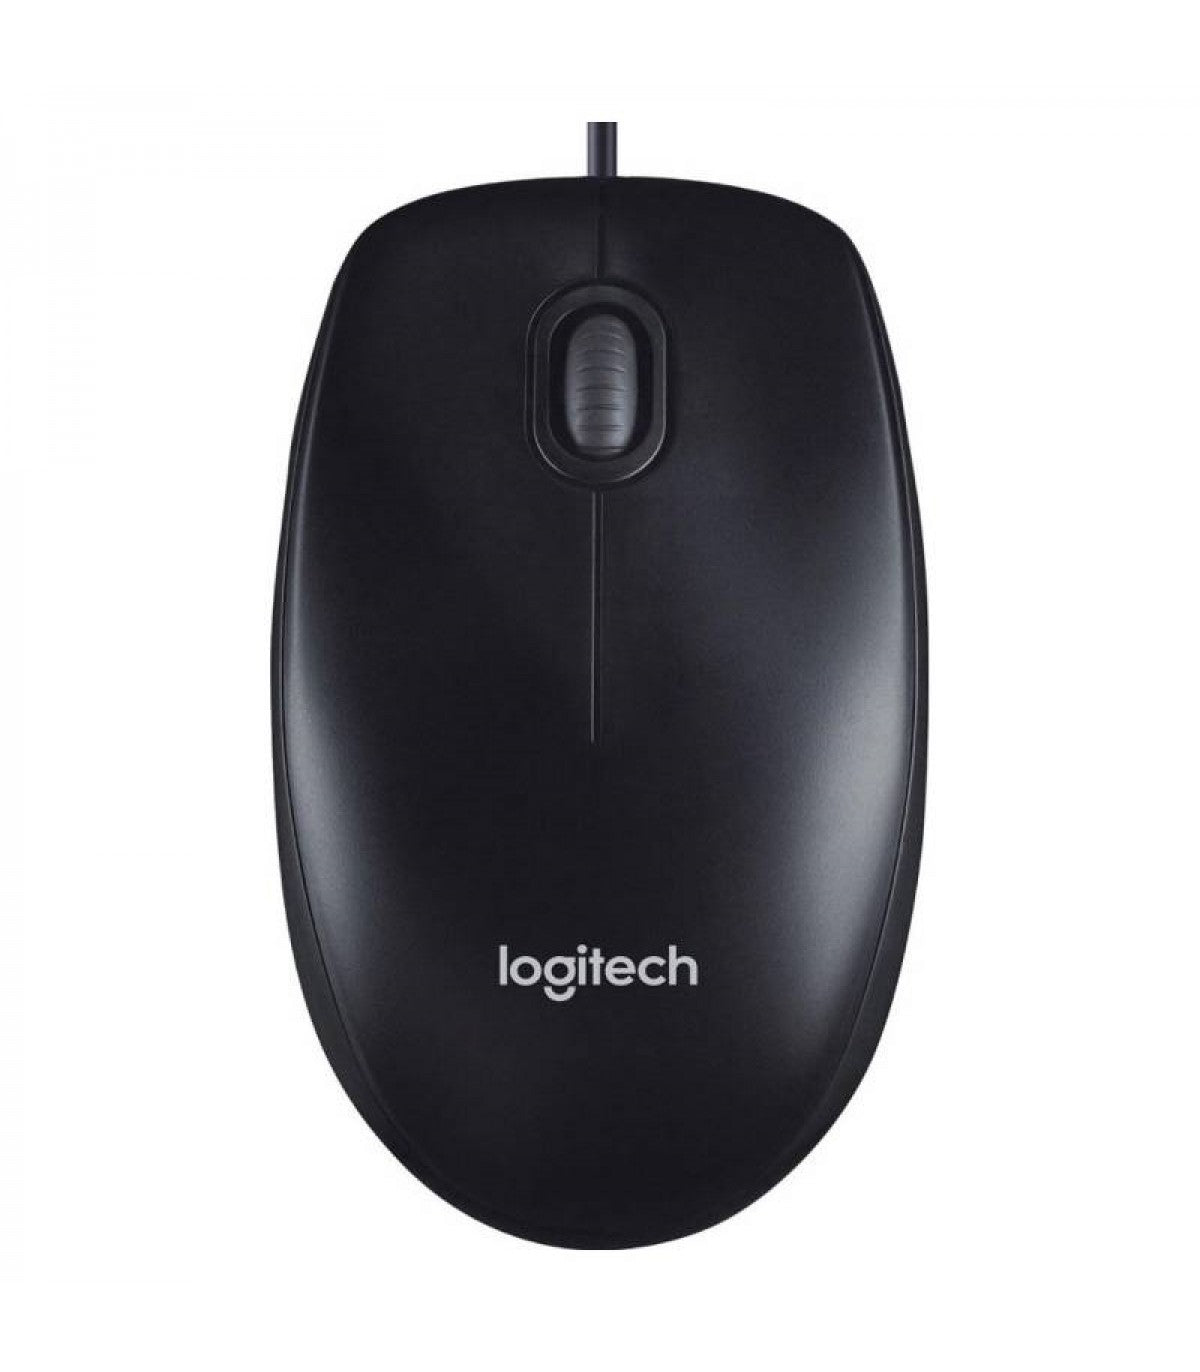 Mouse Logitech M90 1000 DPI USB Negro